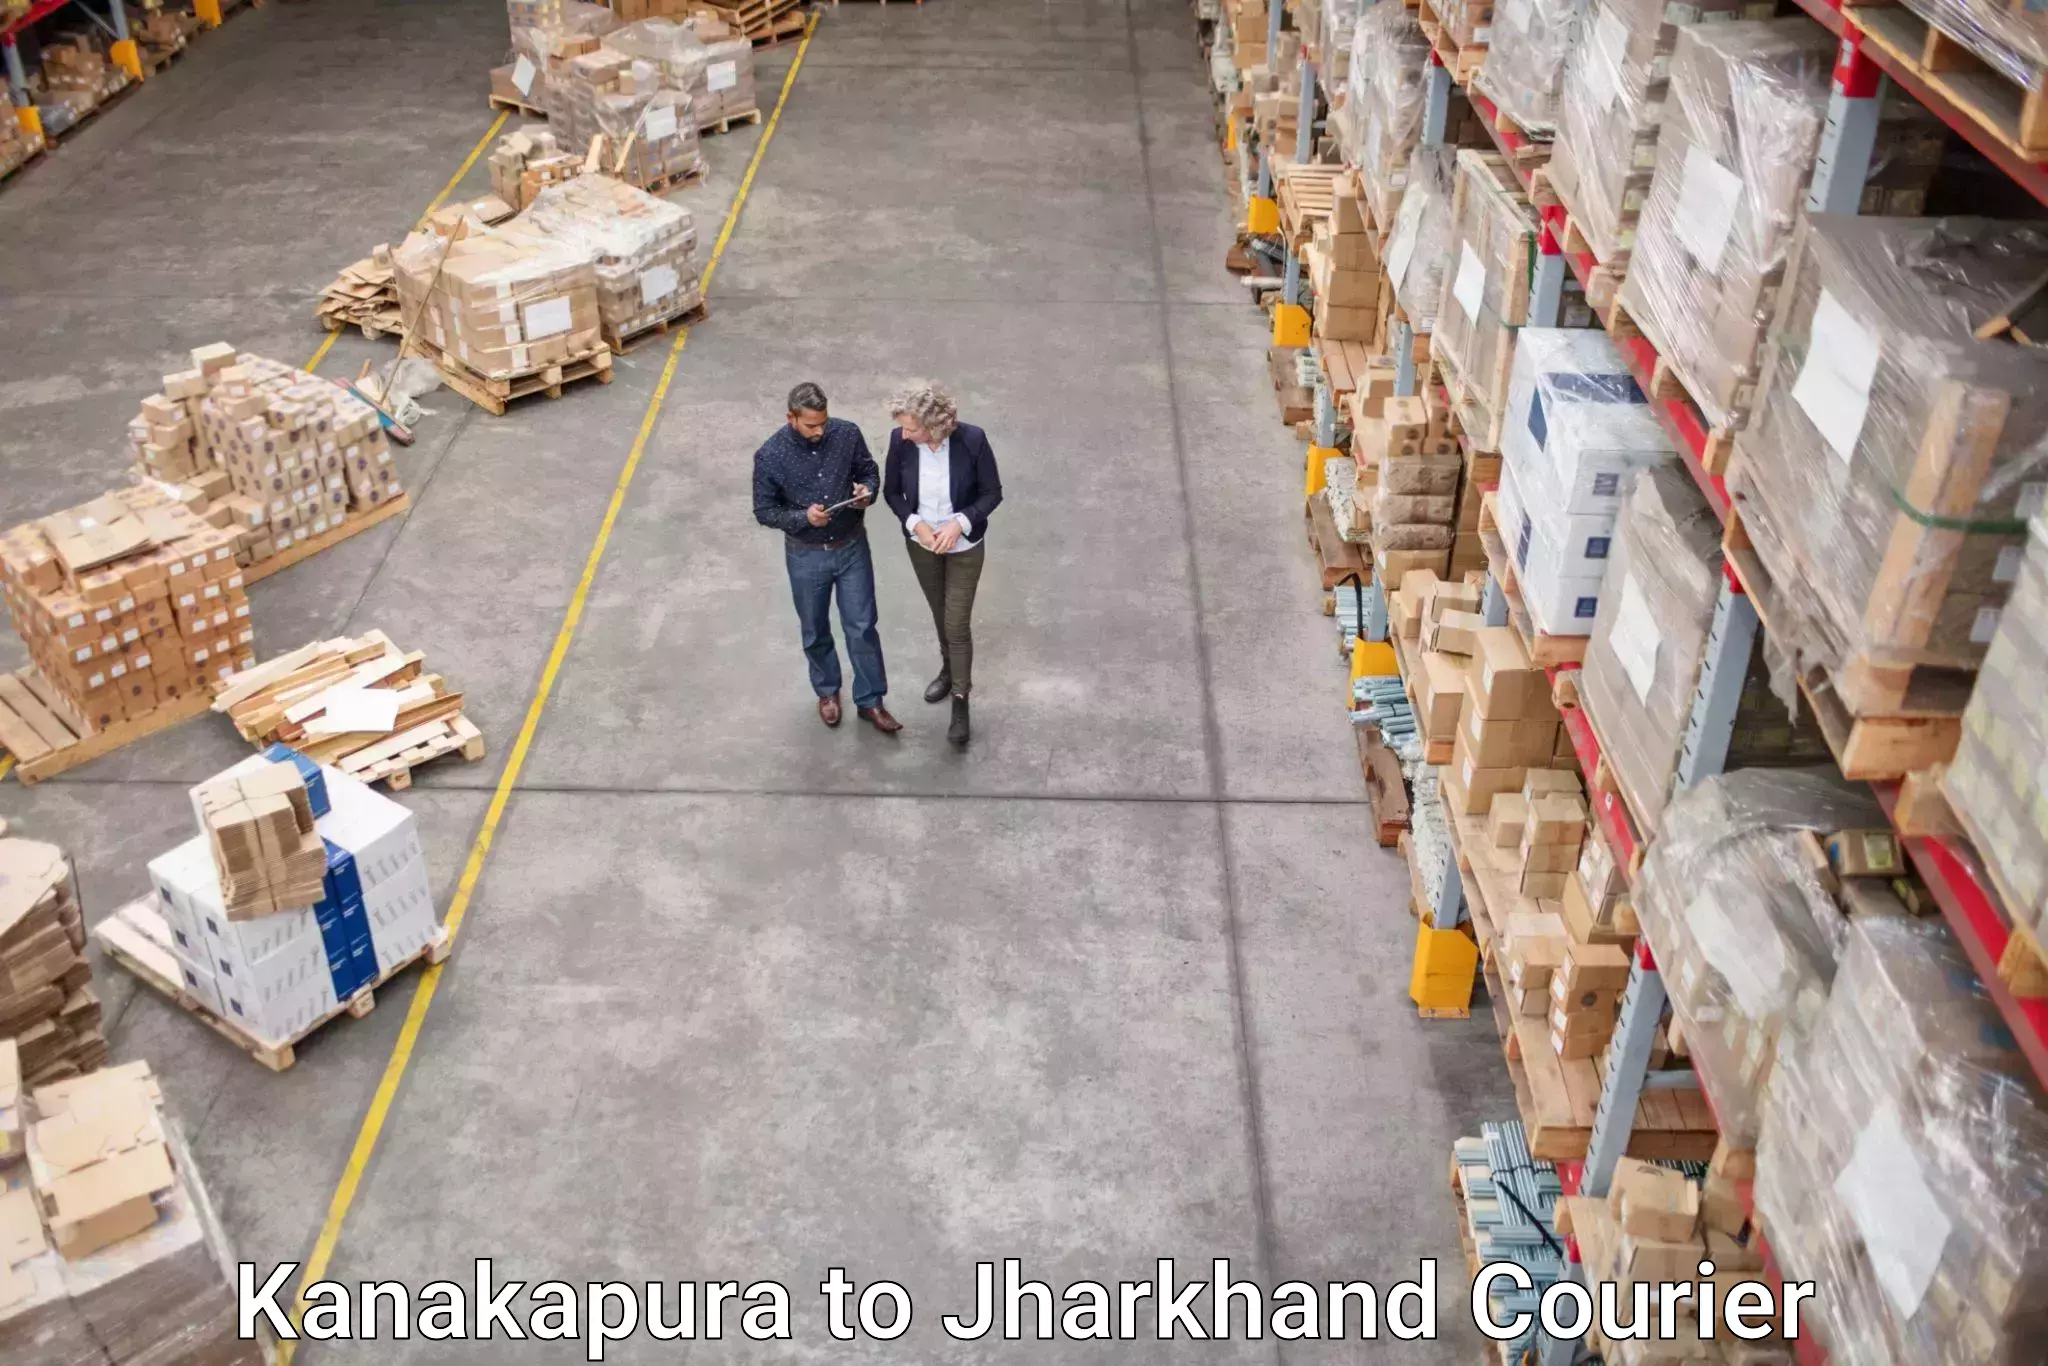 International parcel service Kanakapura to Jharia